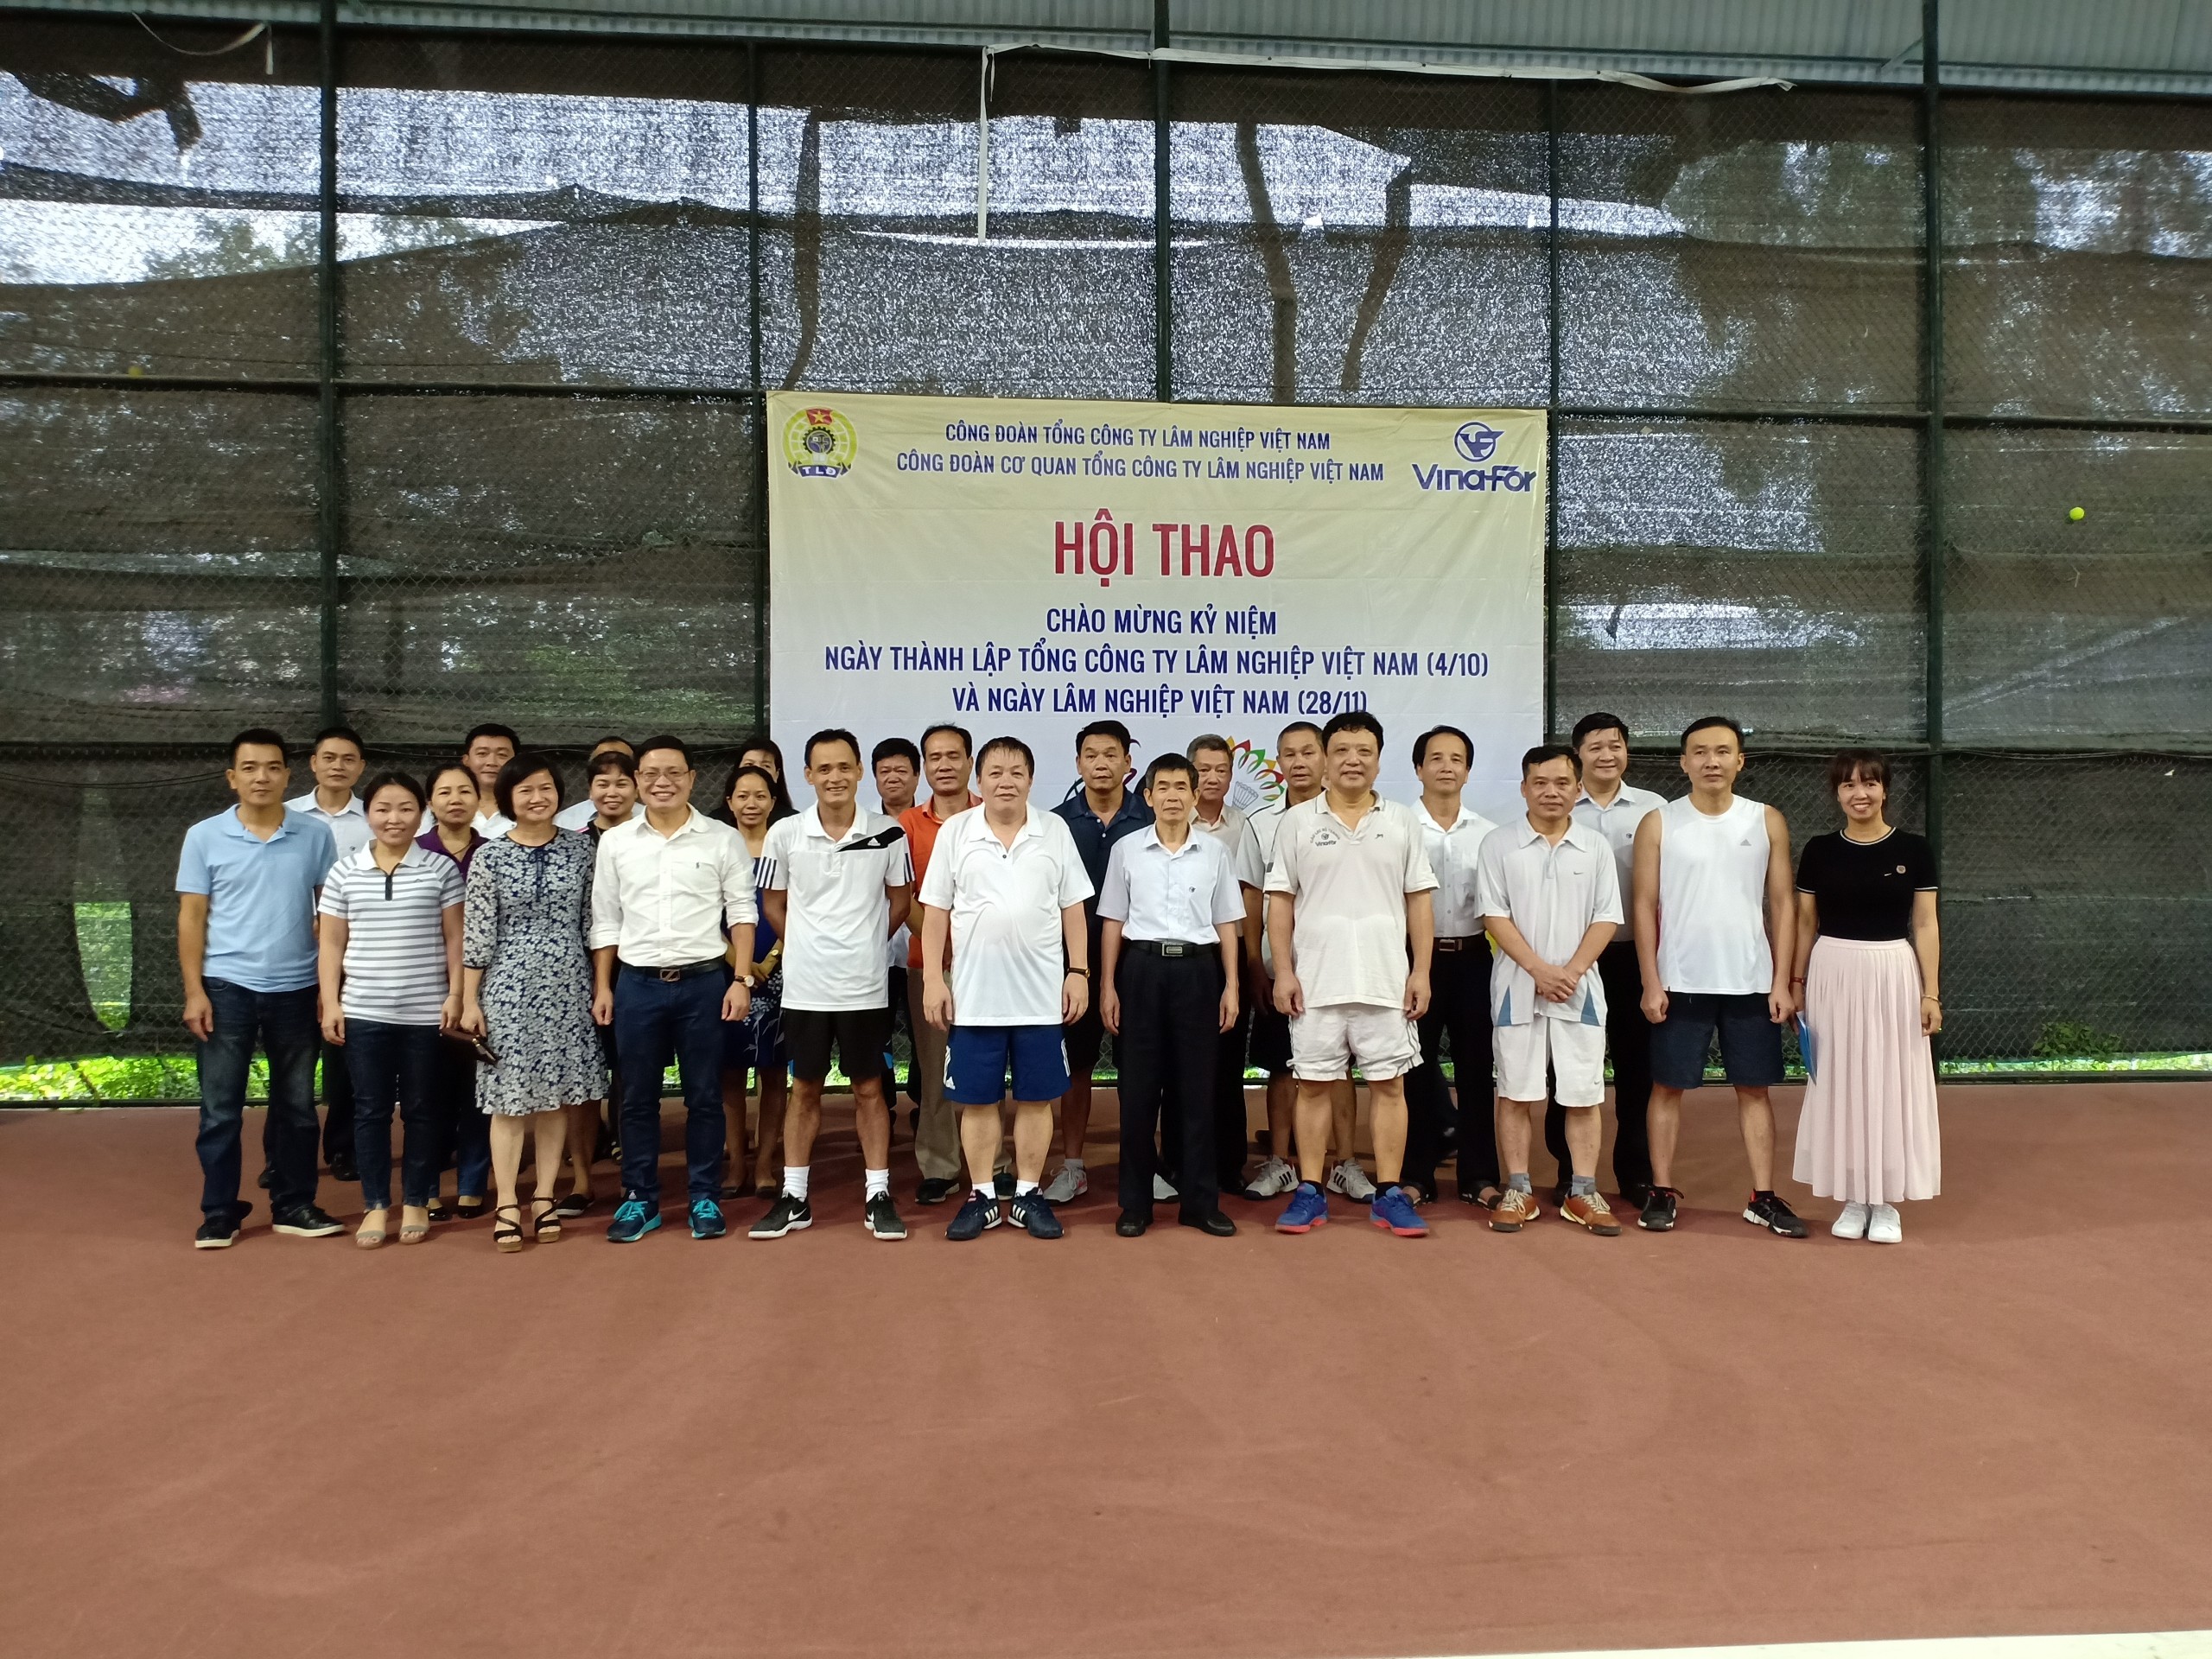 Hội thao chào mừng thành công Đại hội XII Công đoàn Việt Nam - Kỷ niệm ngày thành lập Tổng công ty Lâm nghiệp Việt Nam (4-10) và ngày Lâm nghiệp Việt Nam (28-11) năm 2018